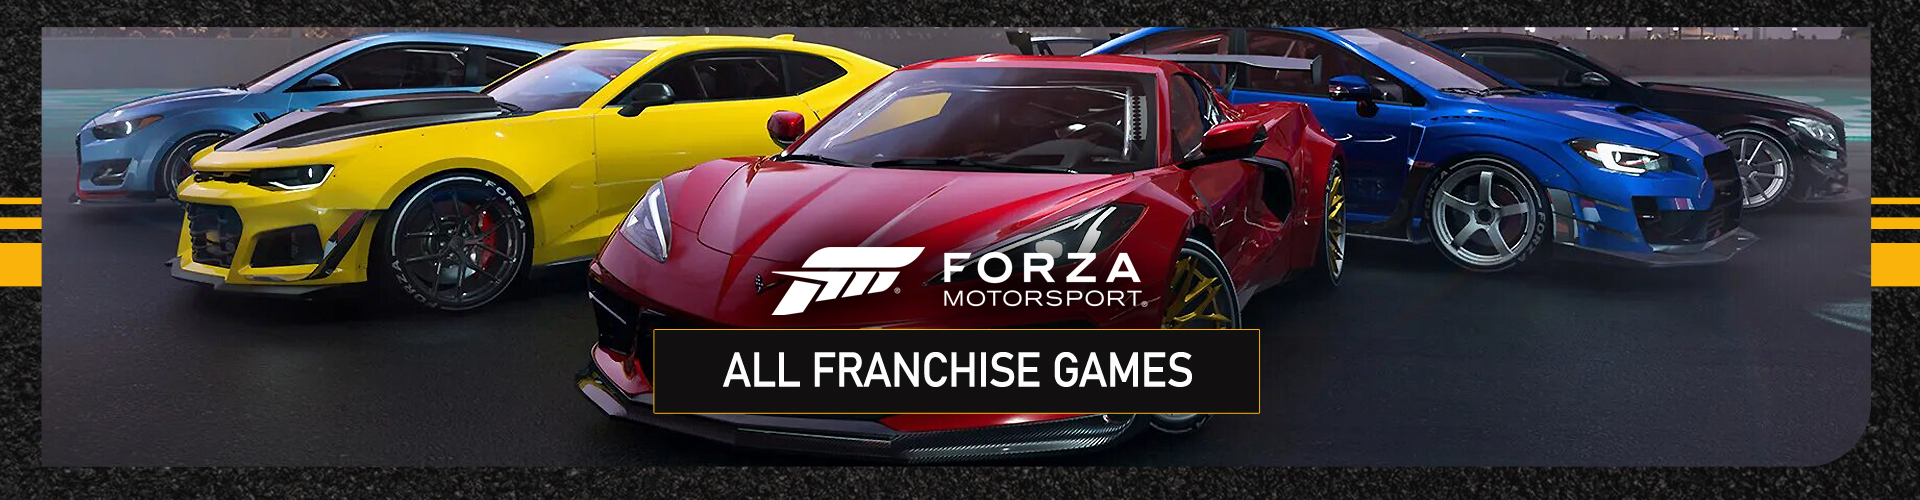 Serie Forza Motorsport: Todos los Juegos de la Franquicia